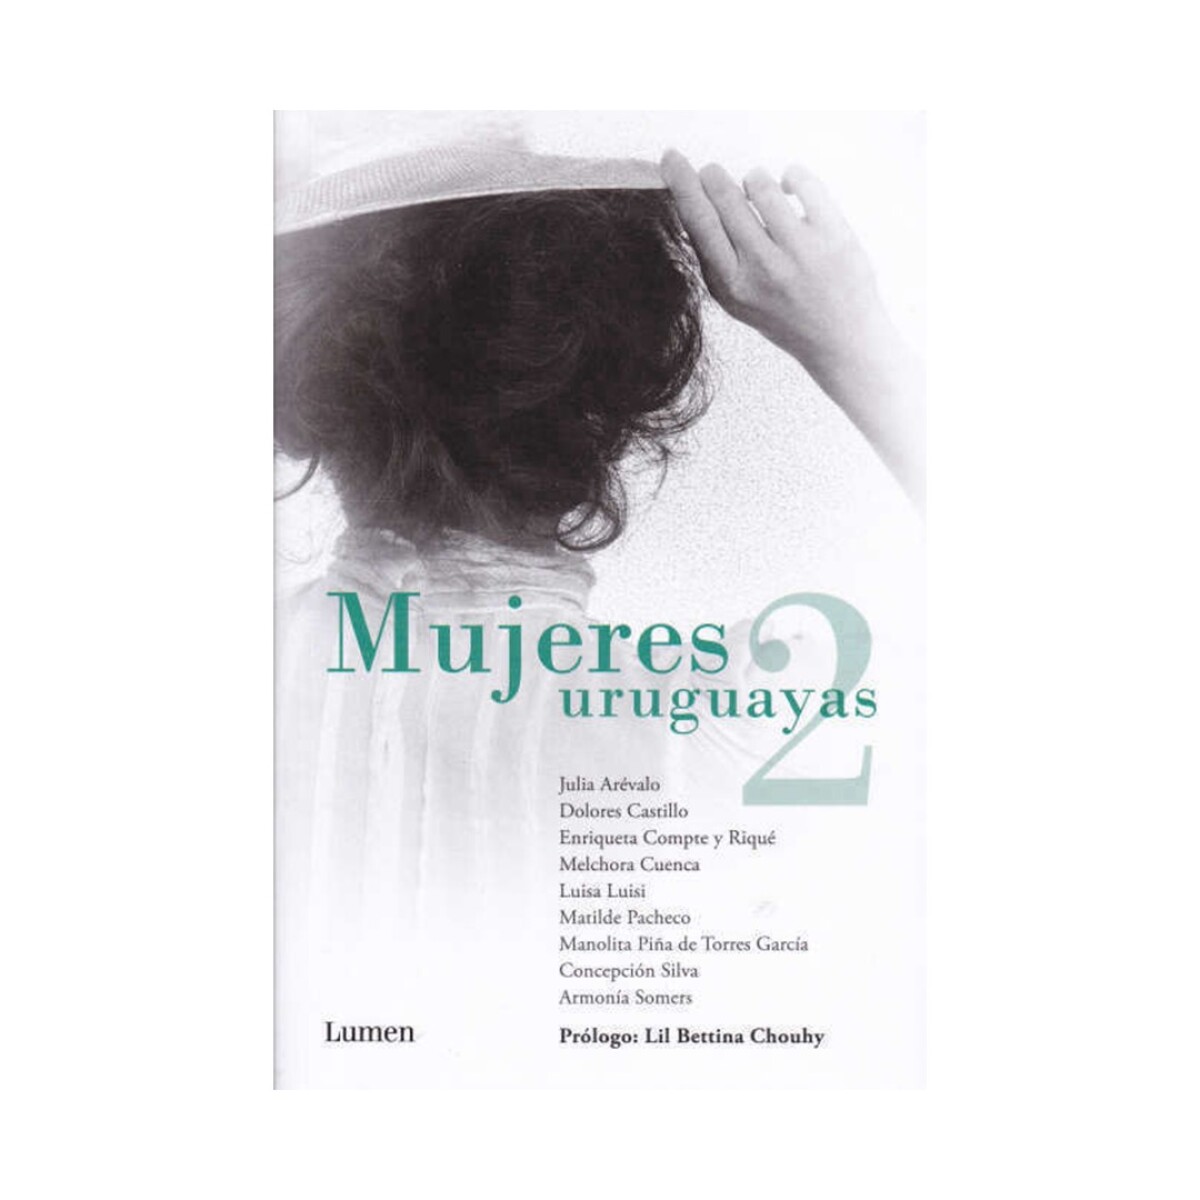 Libro Mujeres Uruguayas 2 - 001 